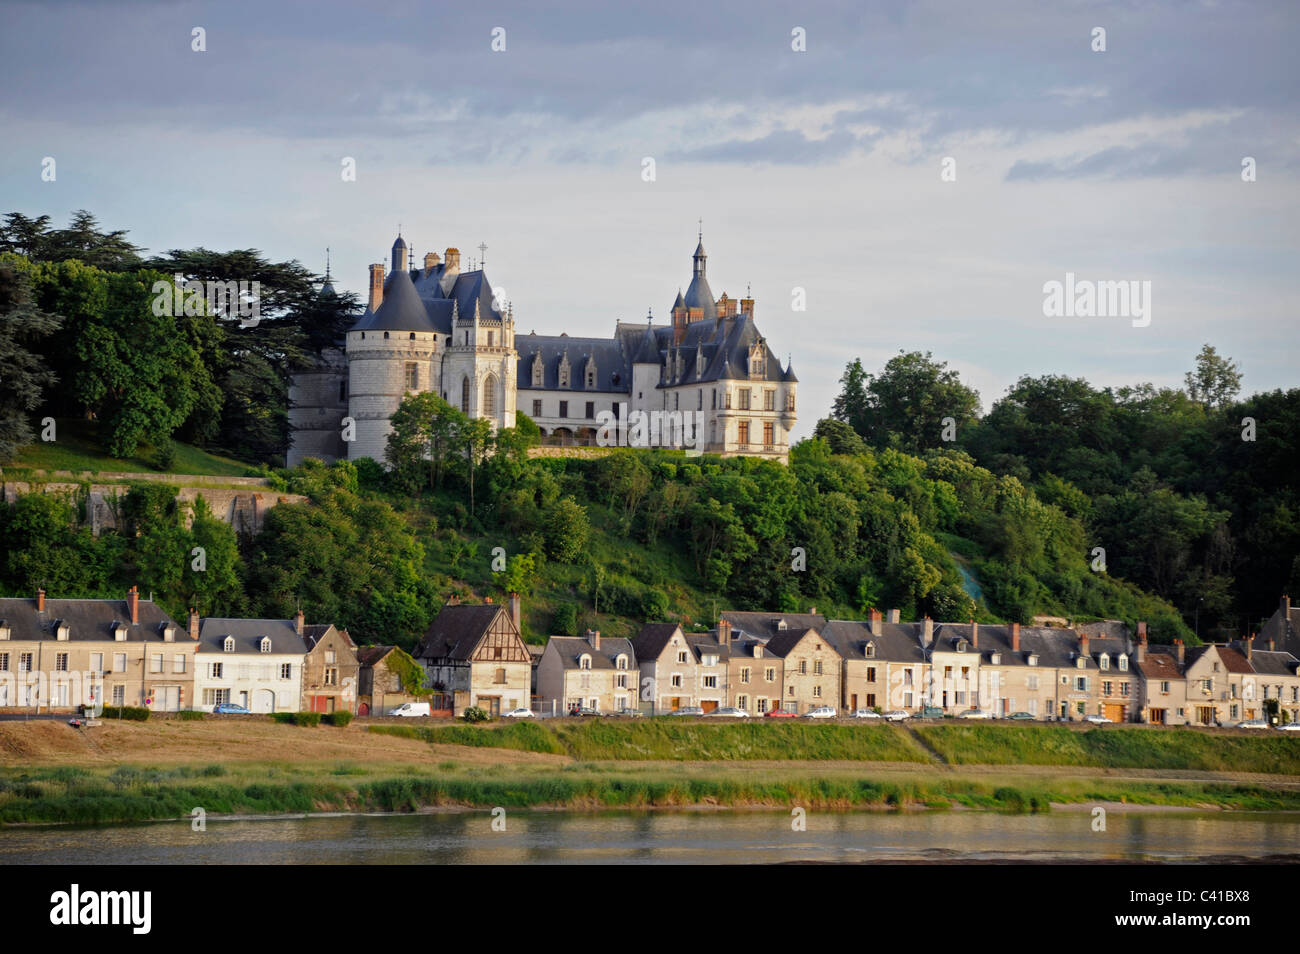 El castillo, el parque de Chaumont Chaumont-sur-Loire, patrimonio mundial de la UNESCO, el valle del Loira, Loir-et-Cher,Touraine,Francia, Foto de stock